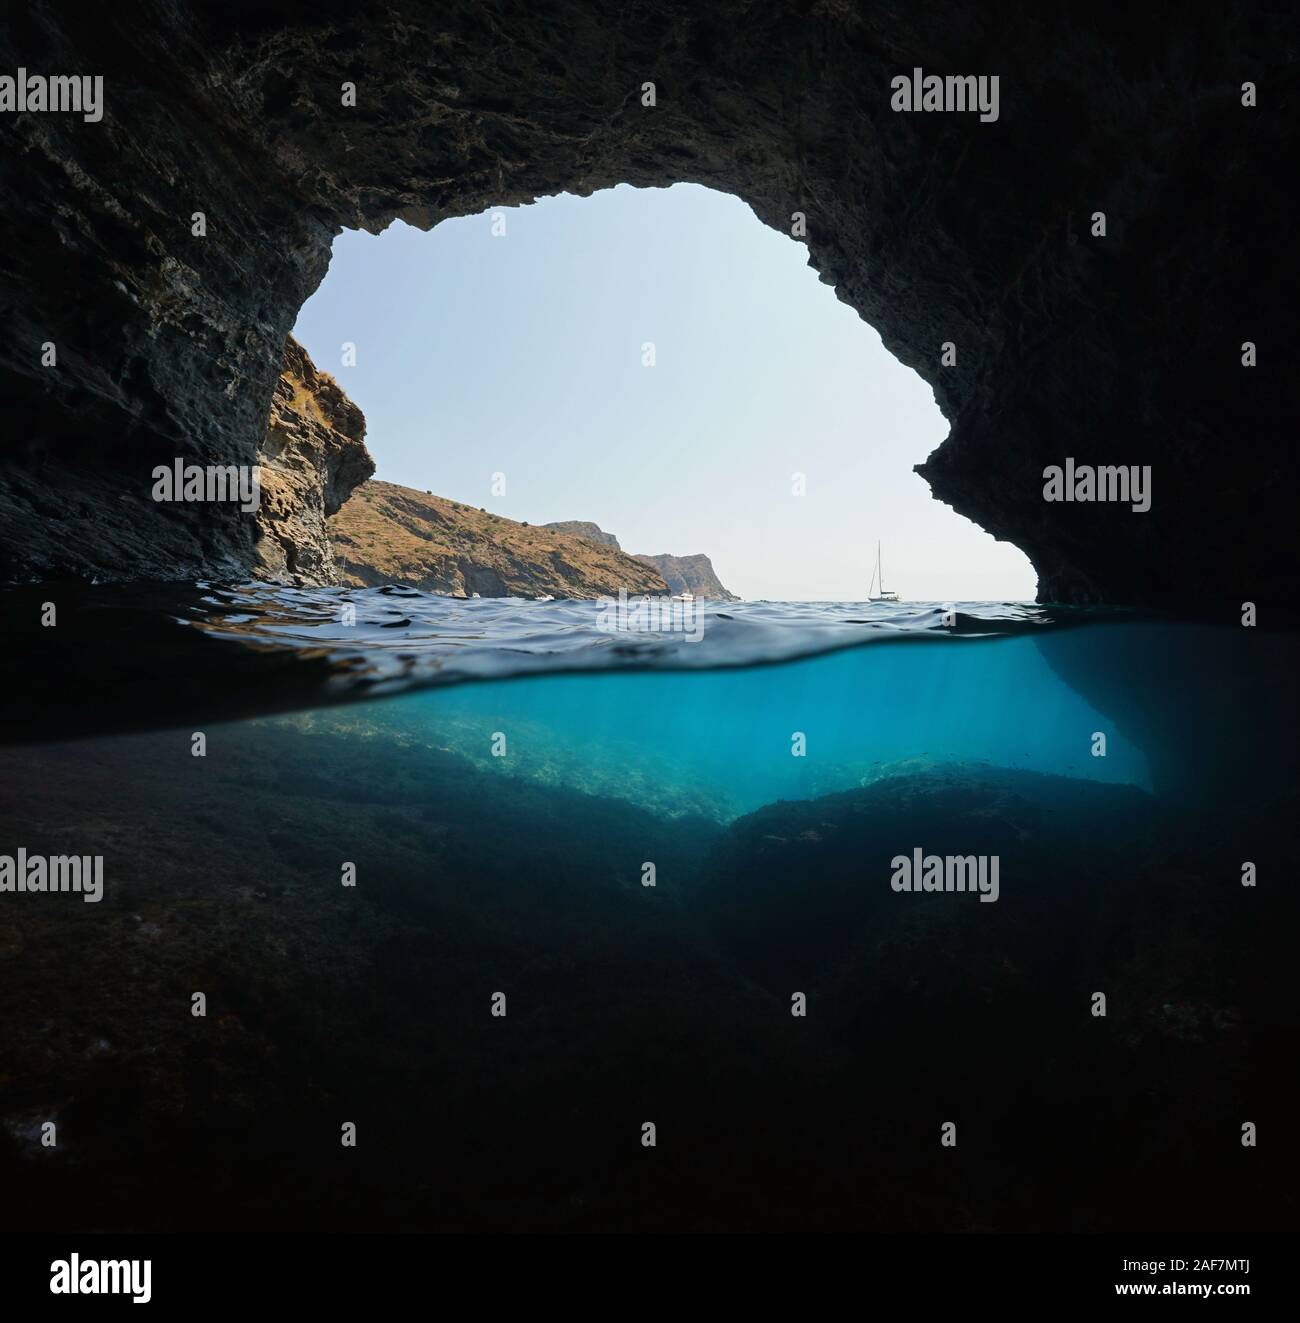 Côte Rocheuse avec quelques bateaux vu de l'intérieur d'une grande grotte, fractionnée sur et sous la surface de l'eau, mer Méditerranée, Espagne, Costa Brava, Catalogne Banque D'Images